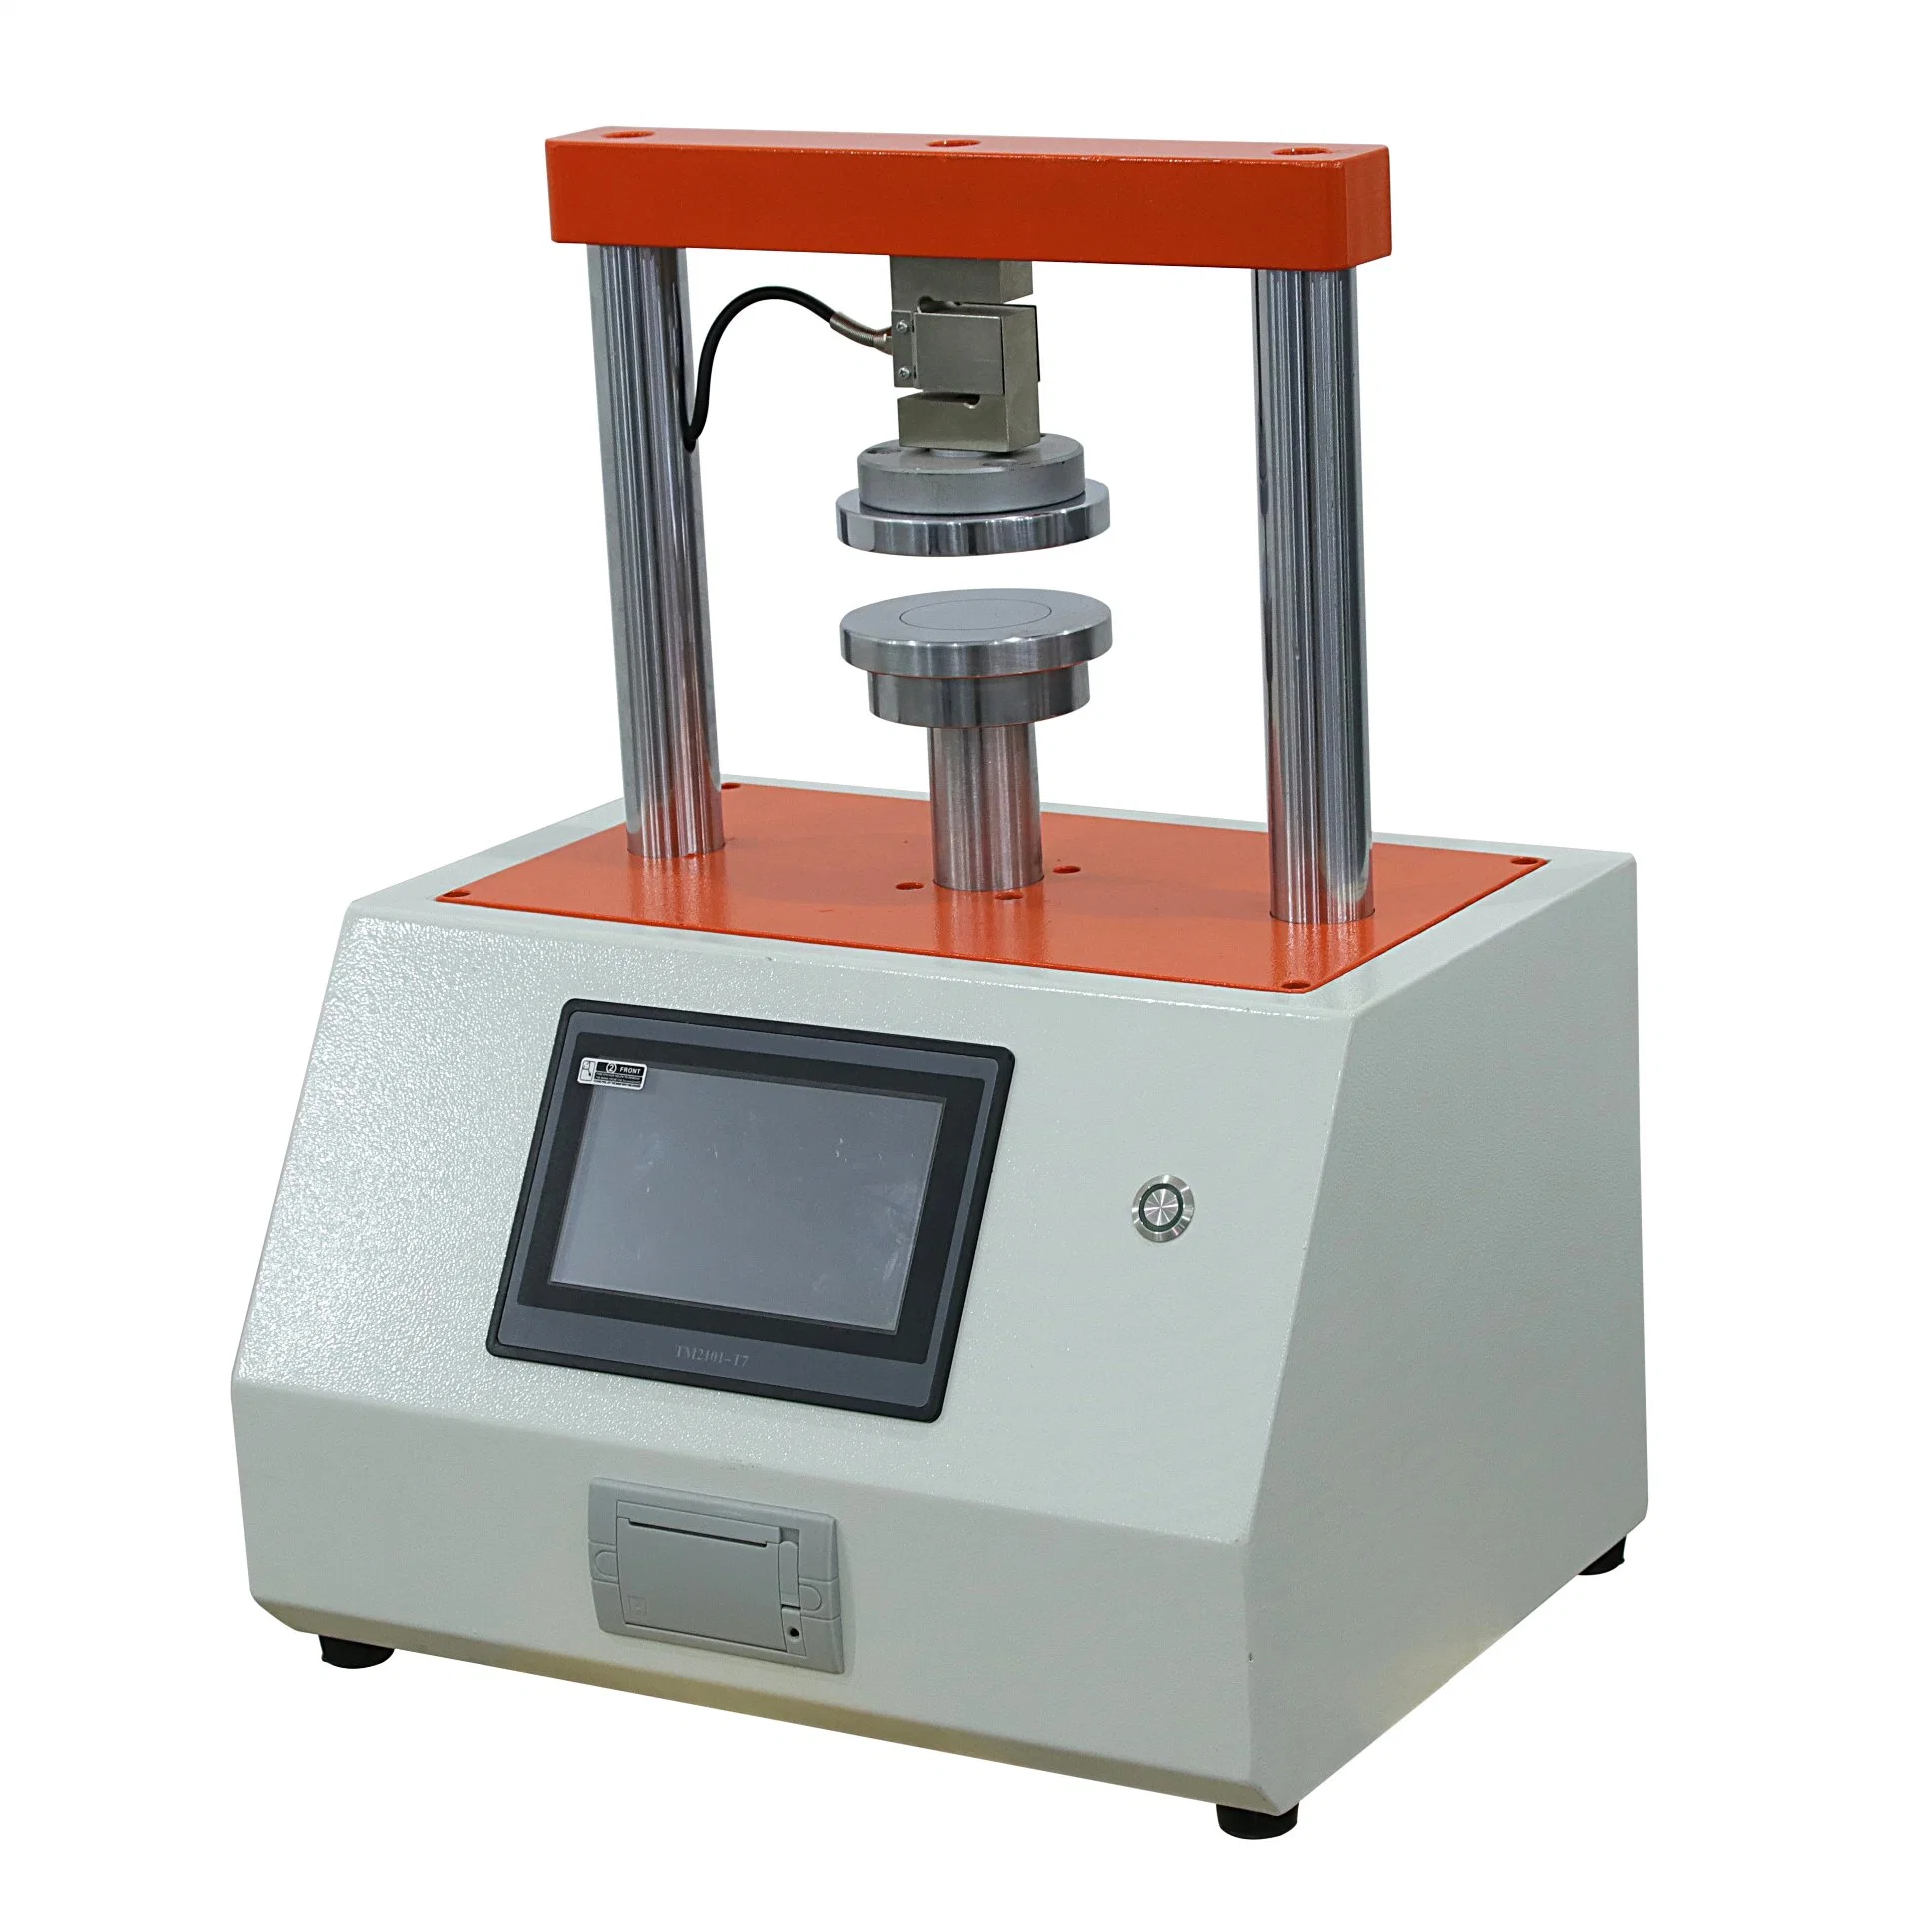 Automatische Wellpappe Ring Press Seite Druckfestigkeit Testmaschine / Testgeräte / Testgerät / zum Testen von Papierprodukten